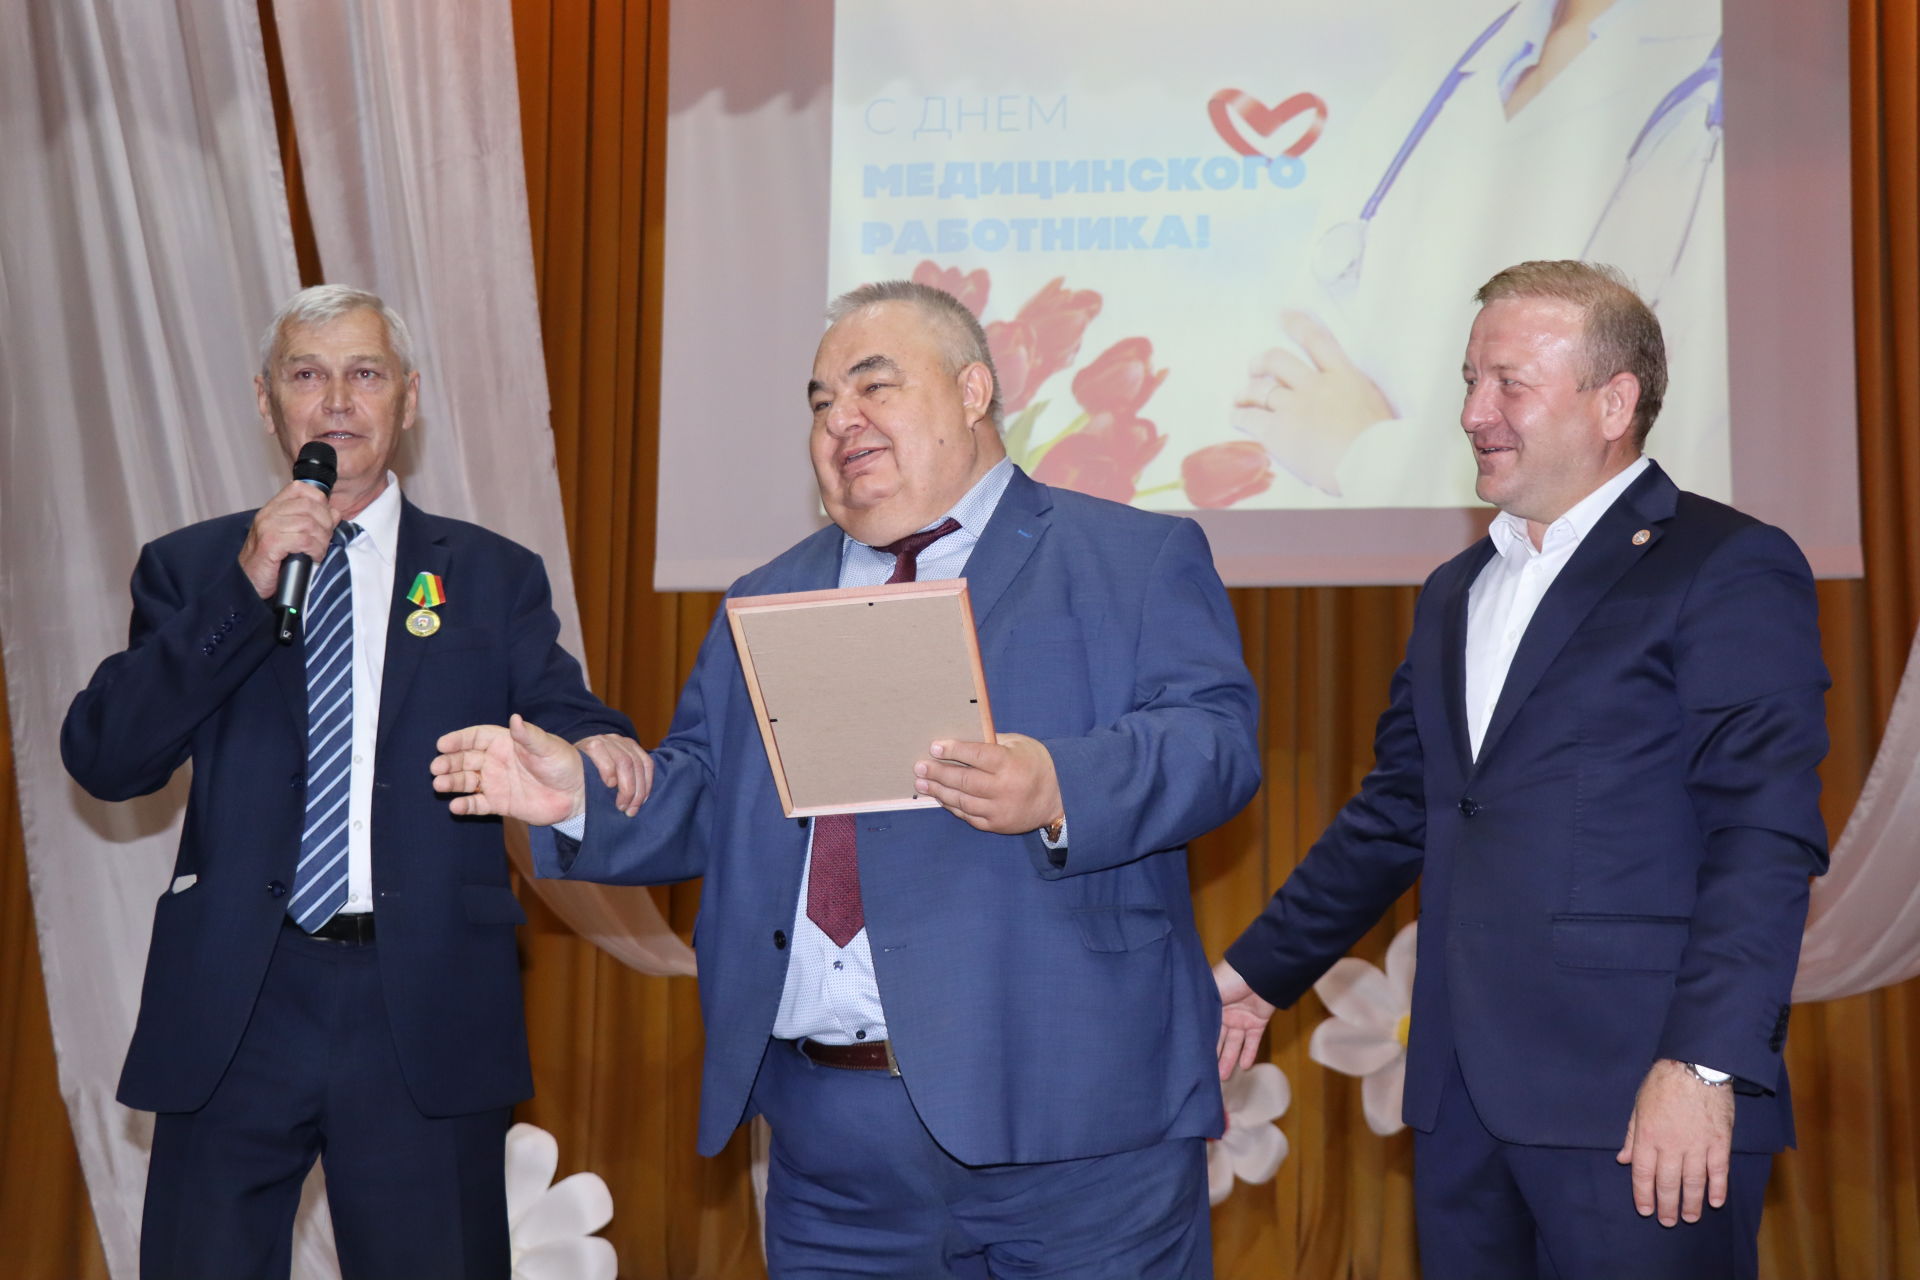 Награждение ко Дню медицинских работников в Дрожжаном -2022